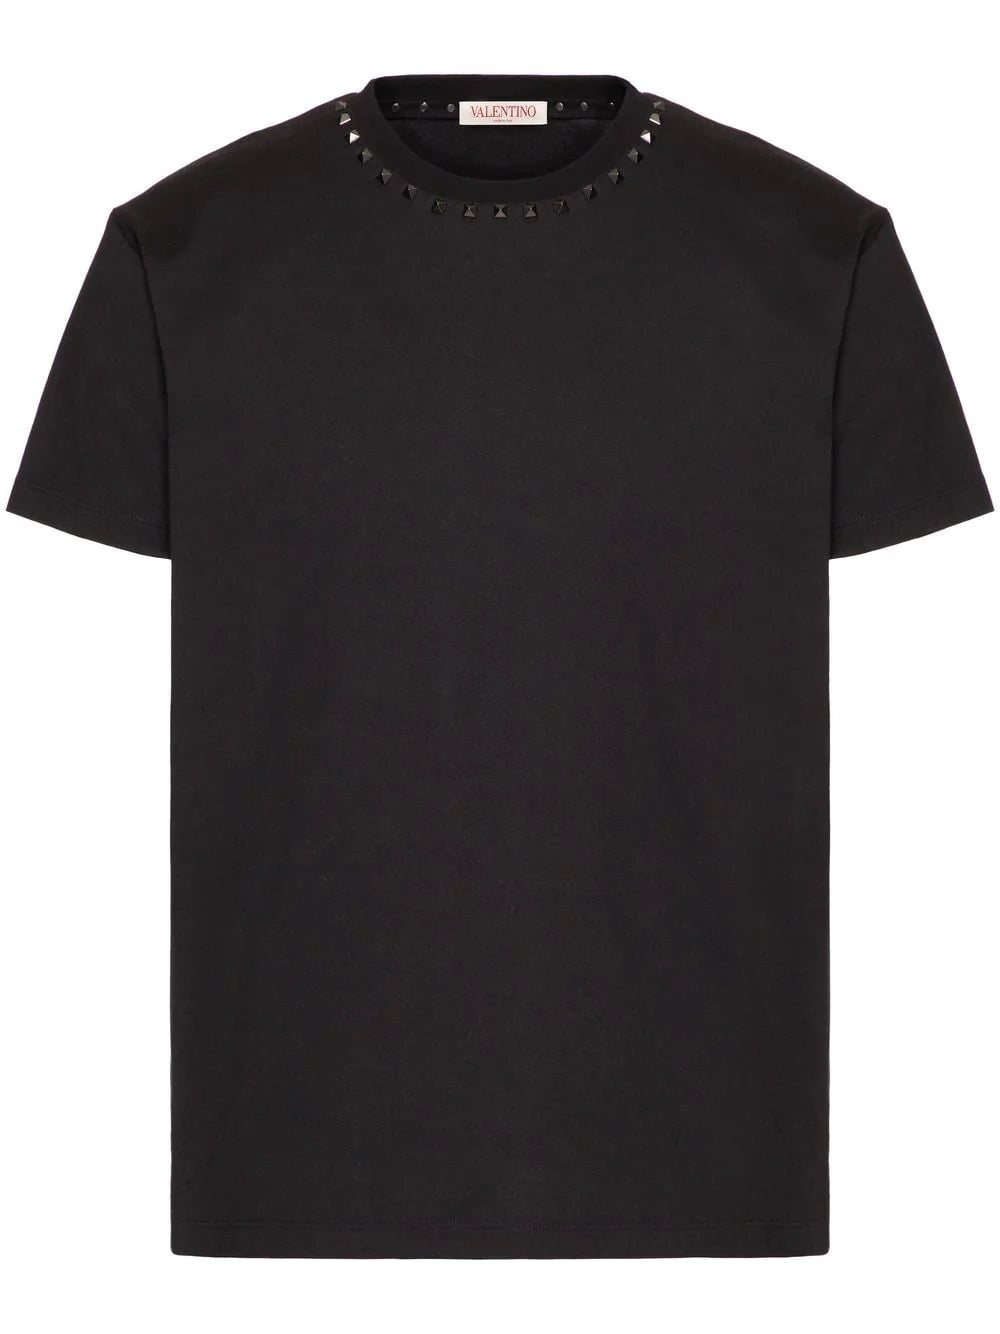 VALENTINO GARAVANI T-shirt in cotone nero